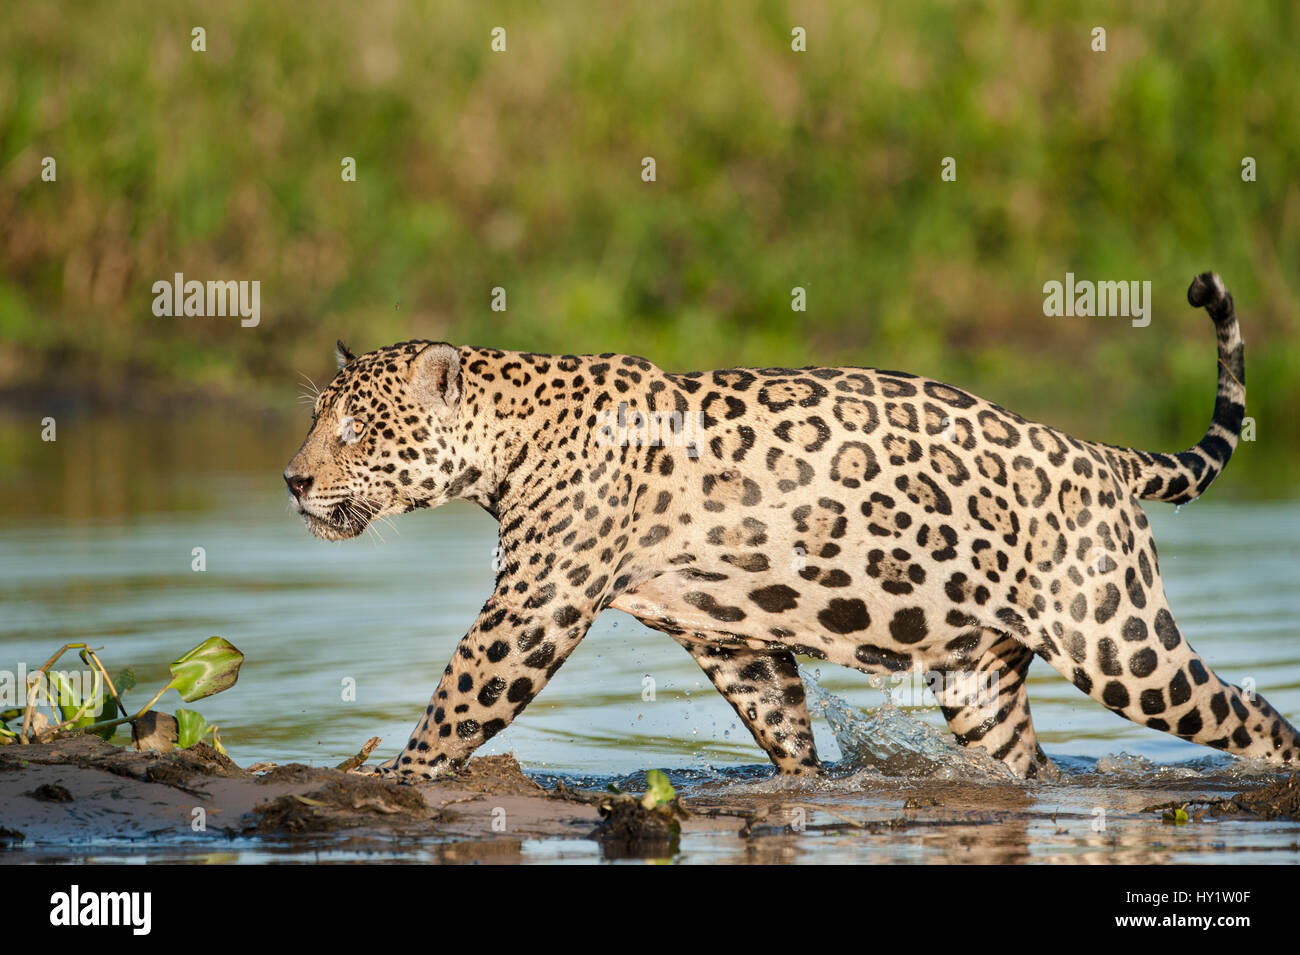 Wilder Mann Jaguar (Panthera onca palustris) durch die Untiefen der ein Rückstau der Cuiaba Fluss am späten Nachmittag Sonne Licht läuft. Nördlichen Pantanal, Brasilien. Stockfoto